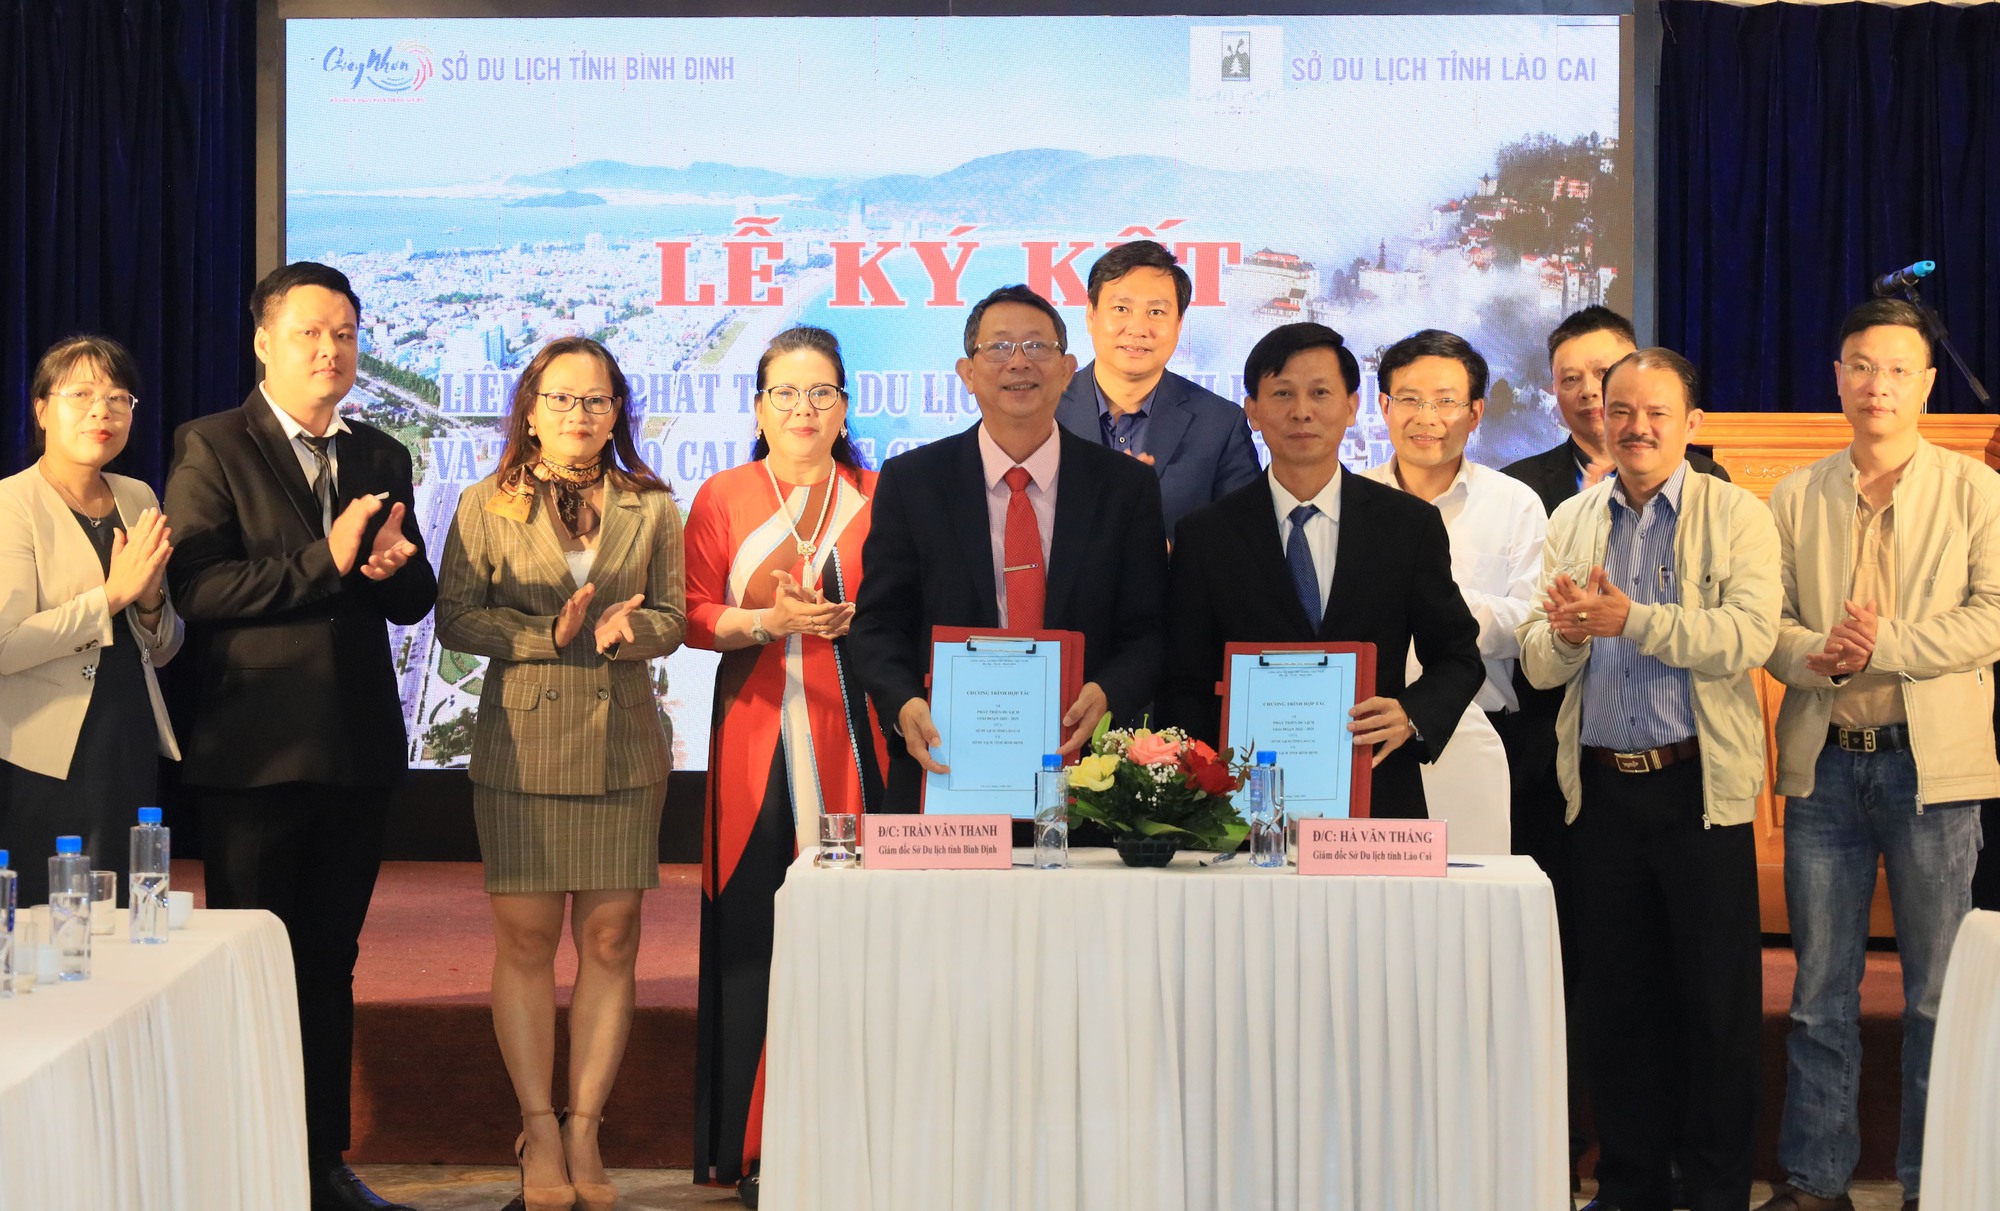 Liên kết phát triển du lịch giữa tỉnh Bình Định và tỉnh Lào Cai - Ảnh 4.